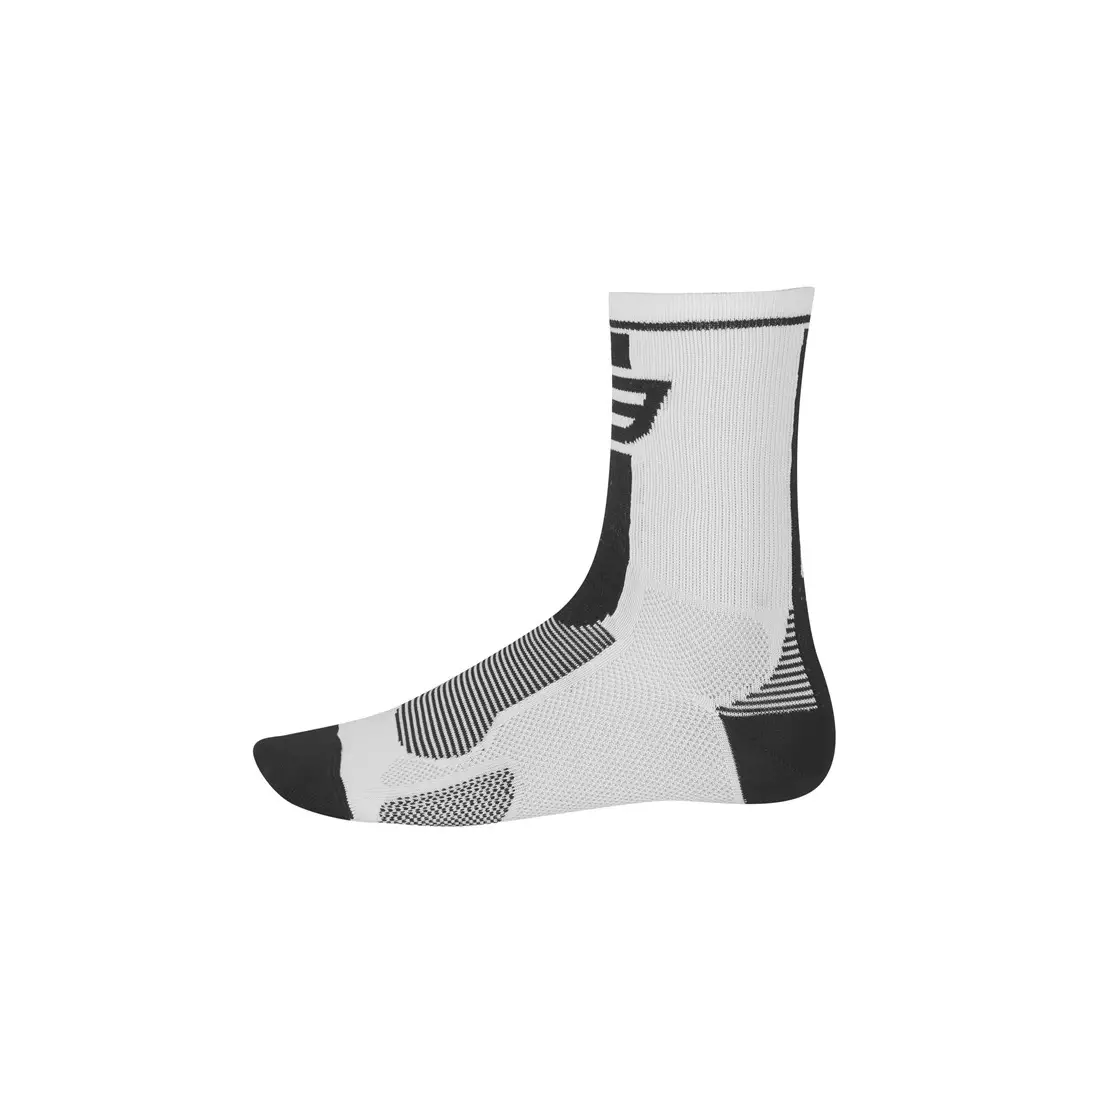 Športové ponožky FORCE LONG 900985/900995 - biele a čierne